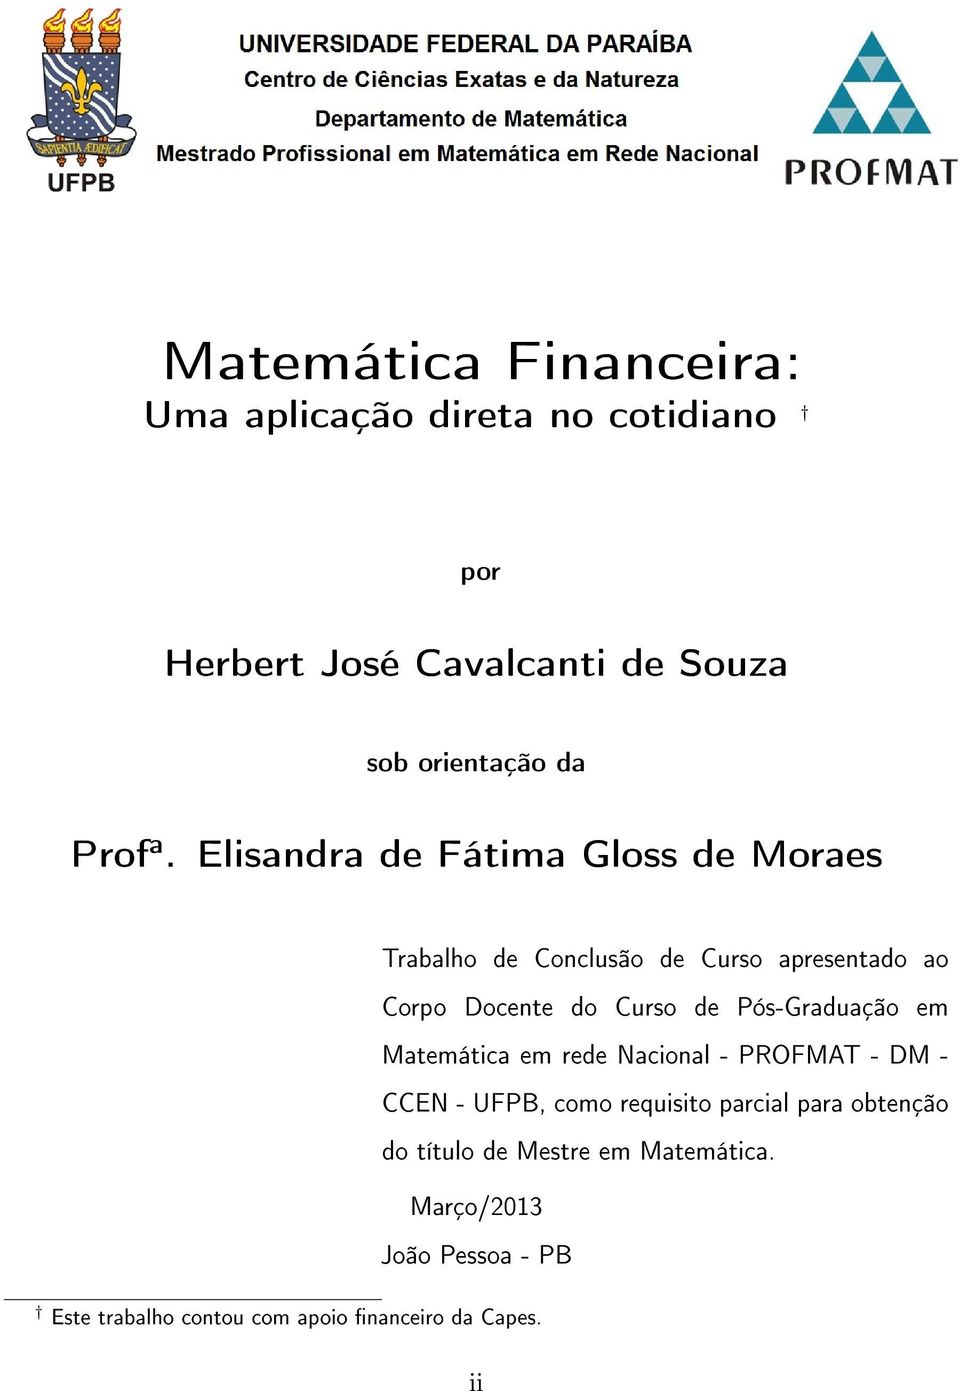 Elisandra de Fátima Gloss de Moraes Trabalho de Conclusão de Curso apresentado ao Corpo Docente do Curso de